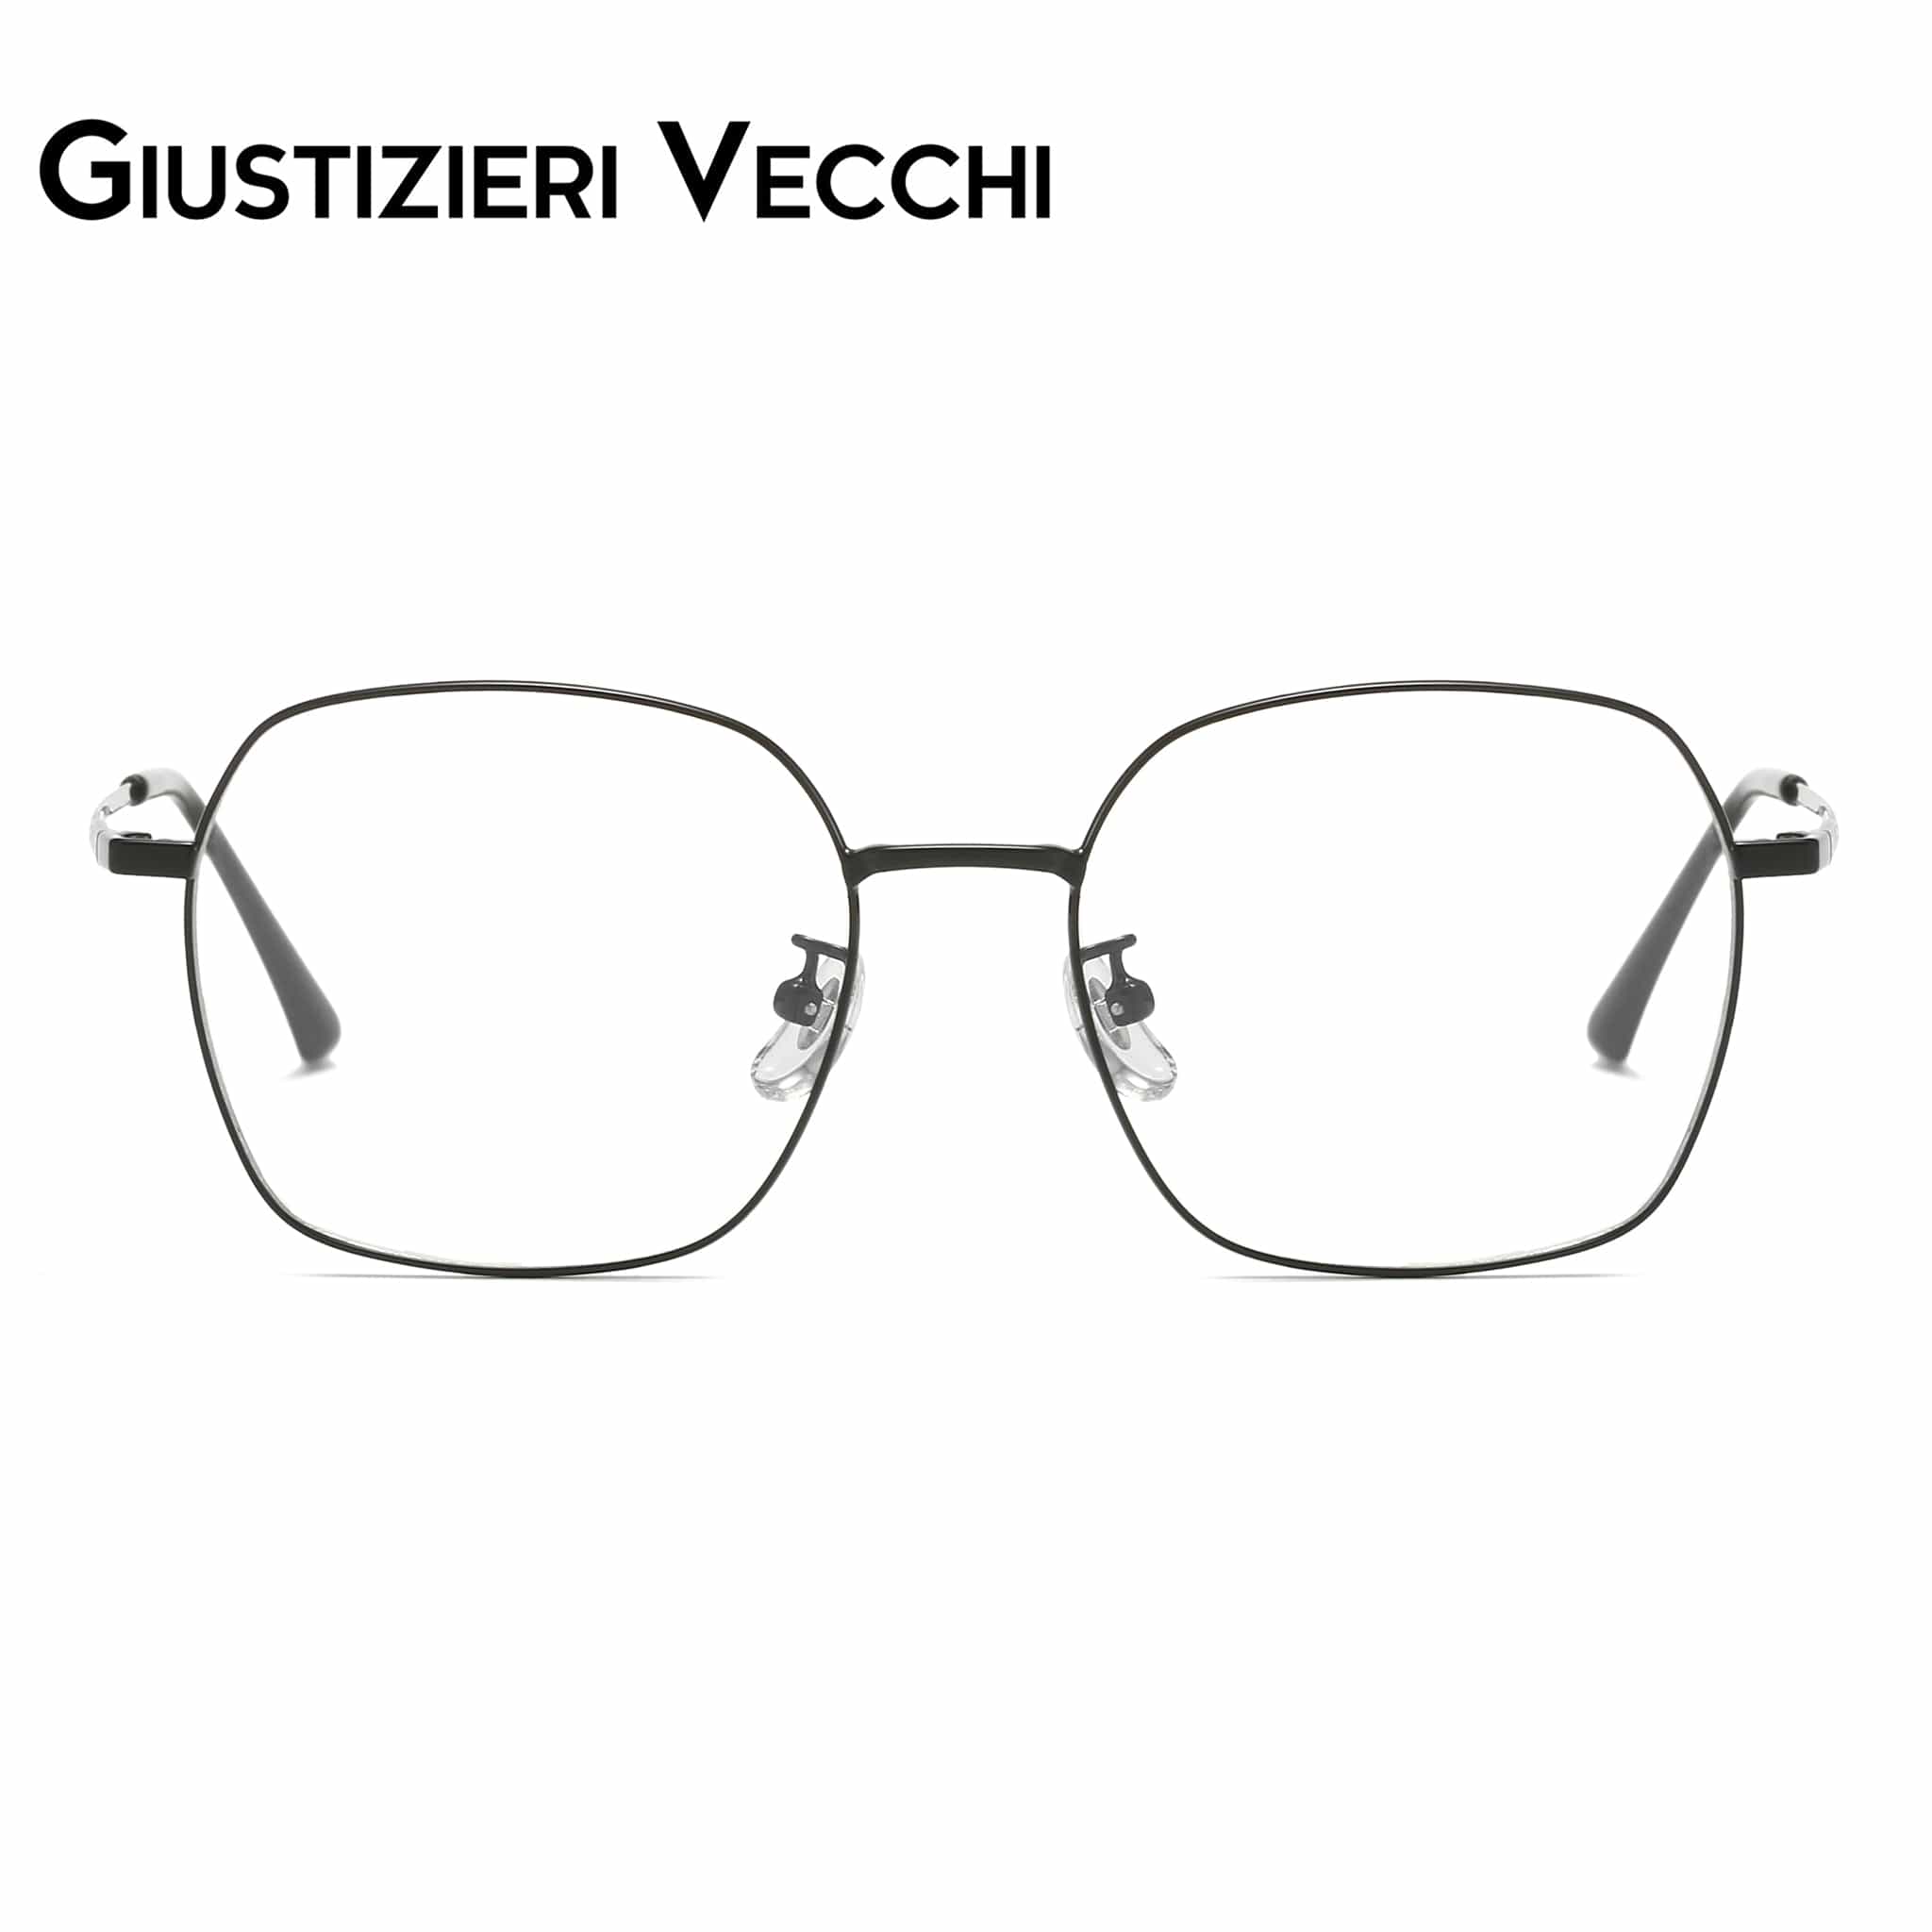 GIUSTIZIERI VECCHI Eyeglasses Small / Black Chill Mist Duo